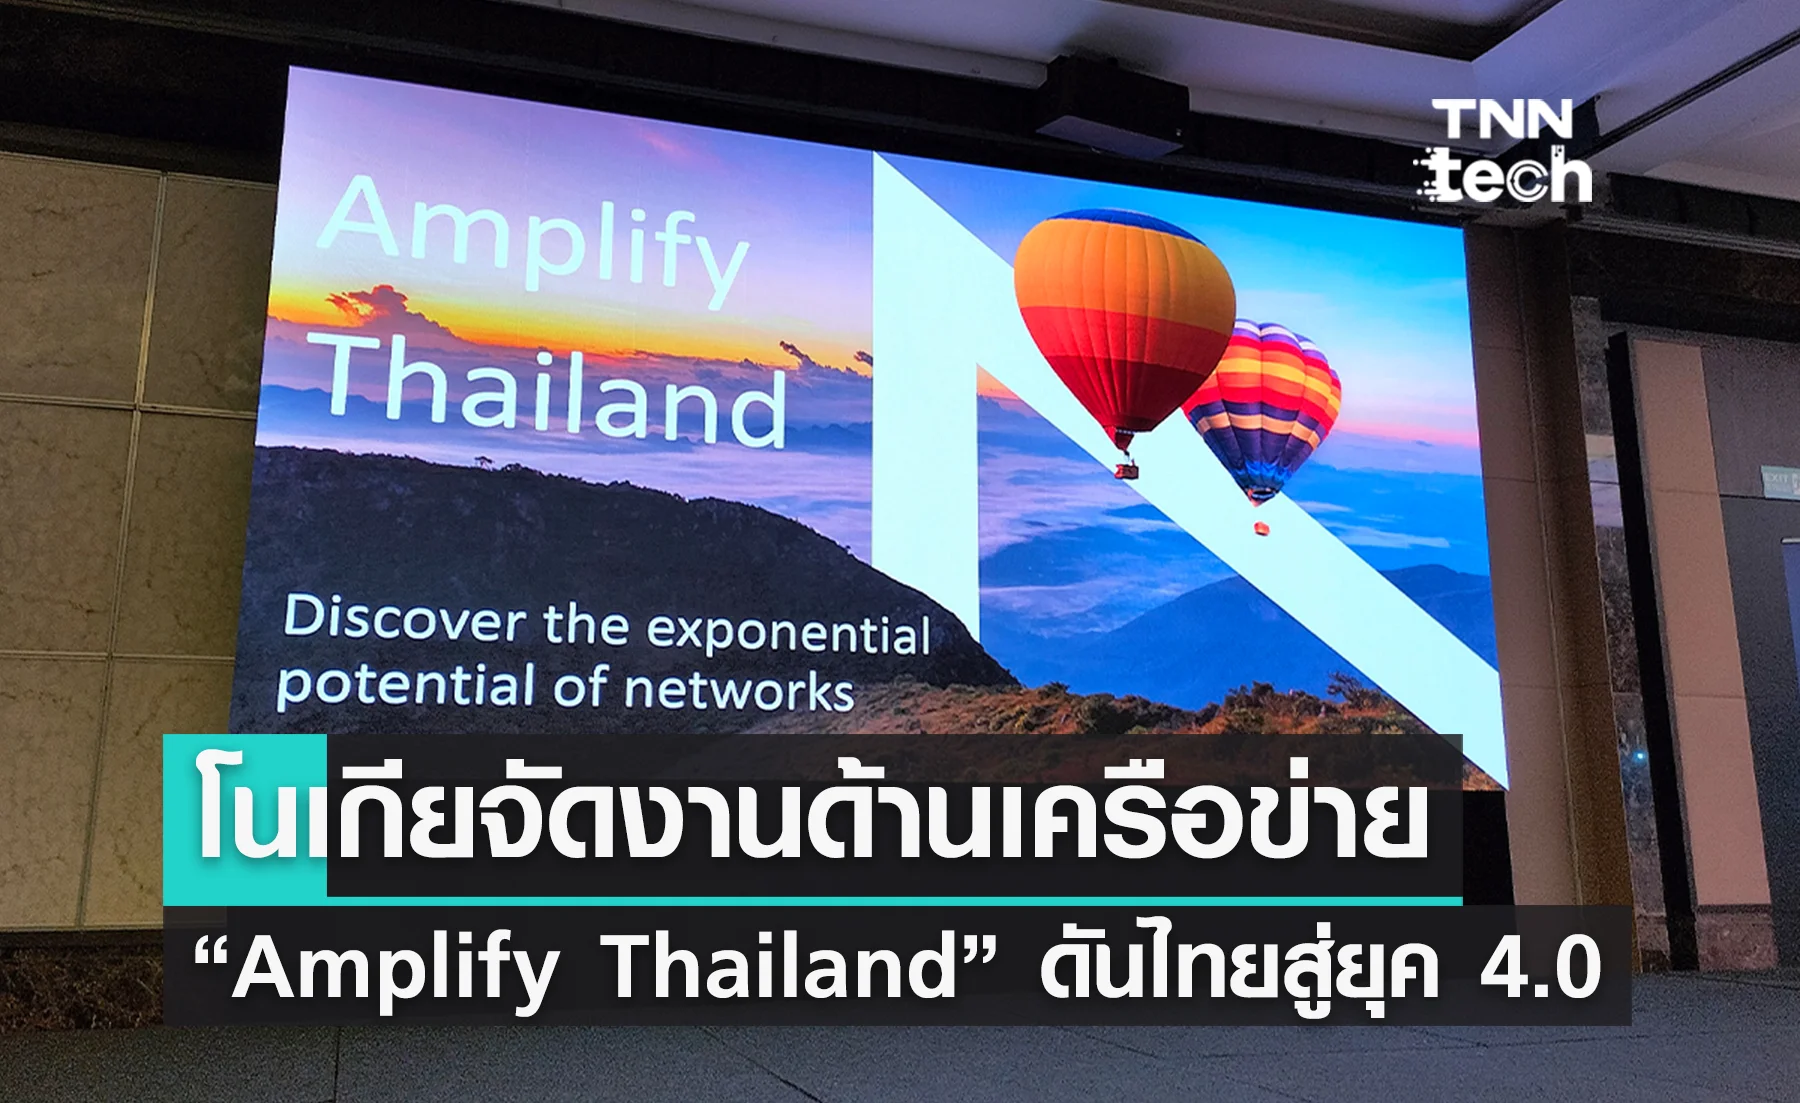 โนเกียจัดงาน “Amplify Thailand” ดันไทยสู่ยุค 4.0 ด้วยนวัตกรรมเครือข่าย